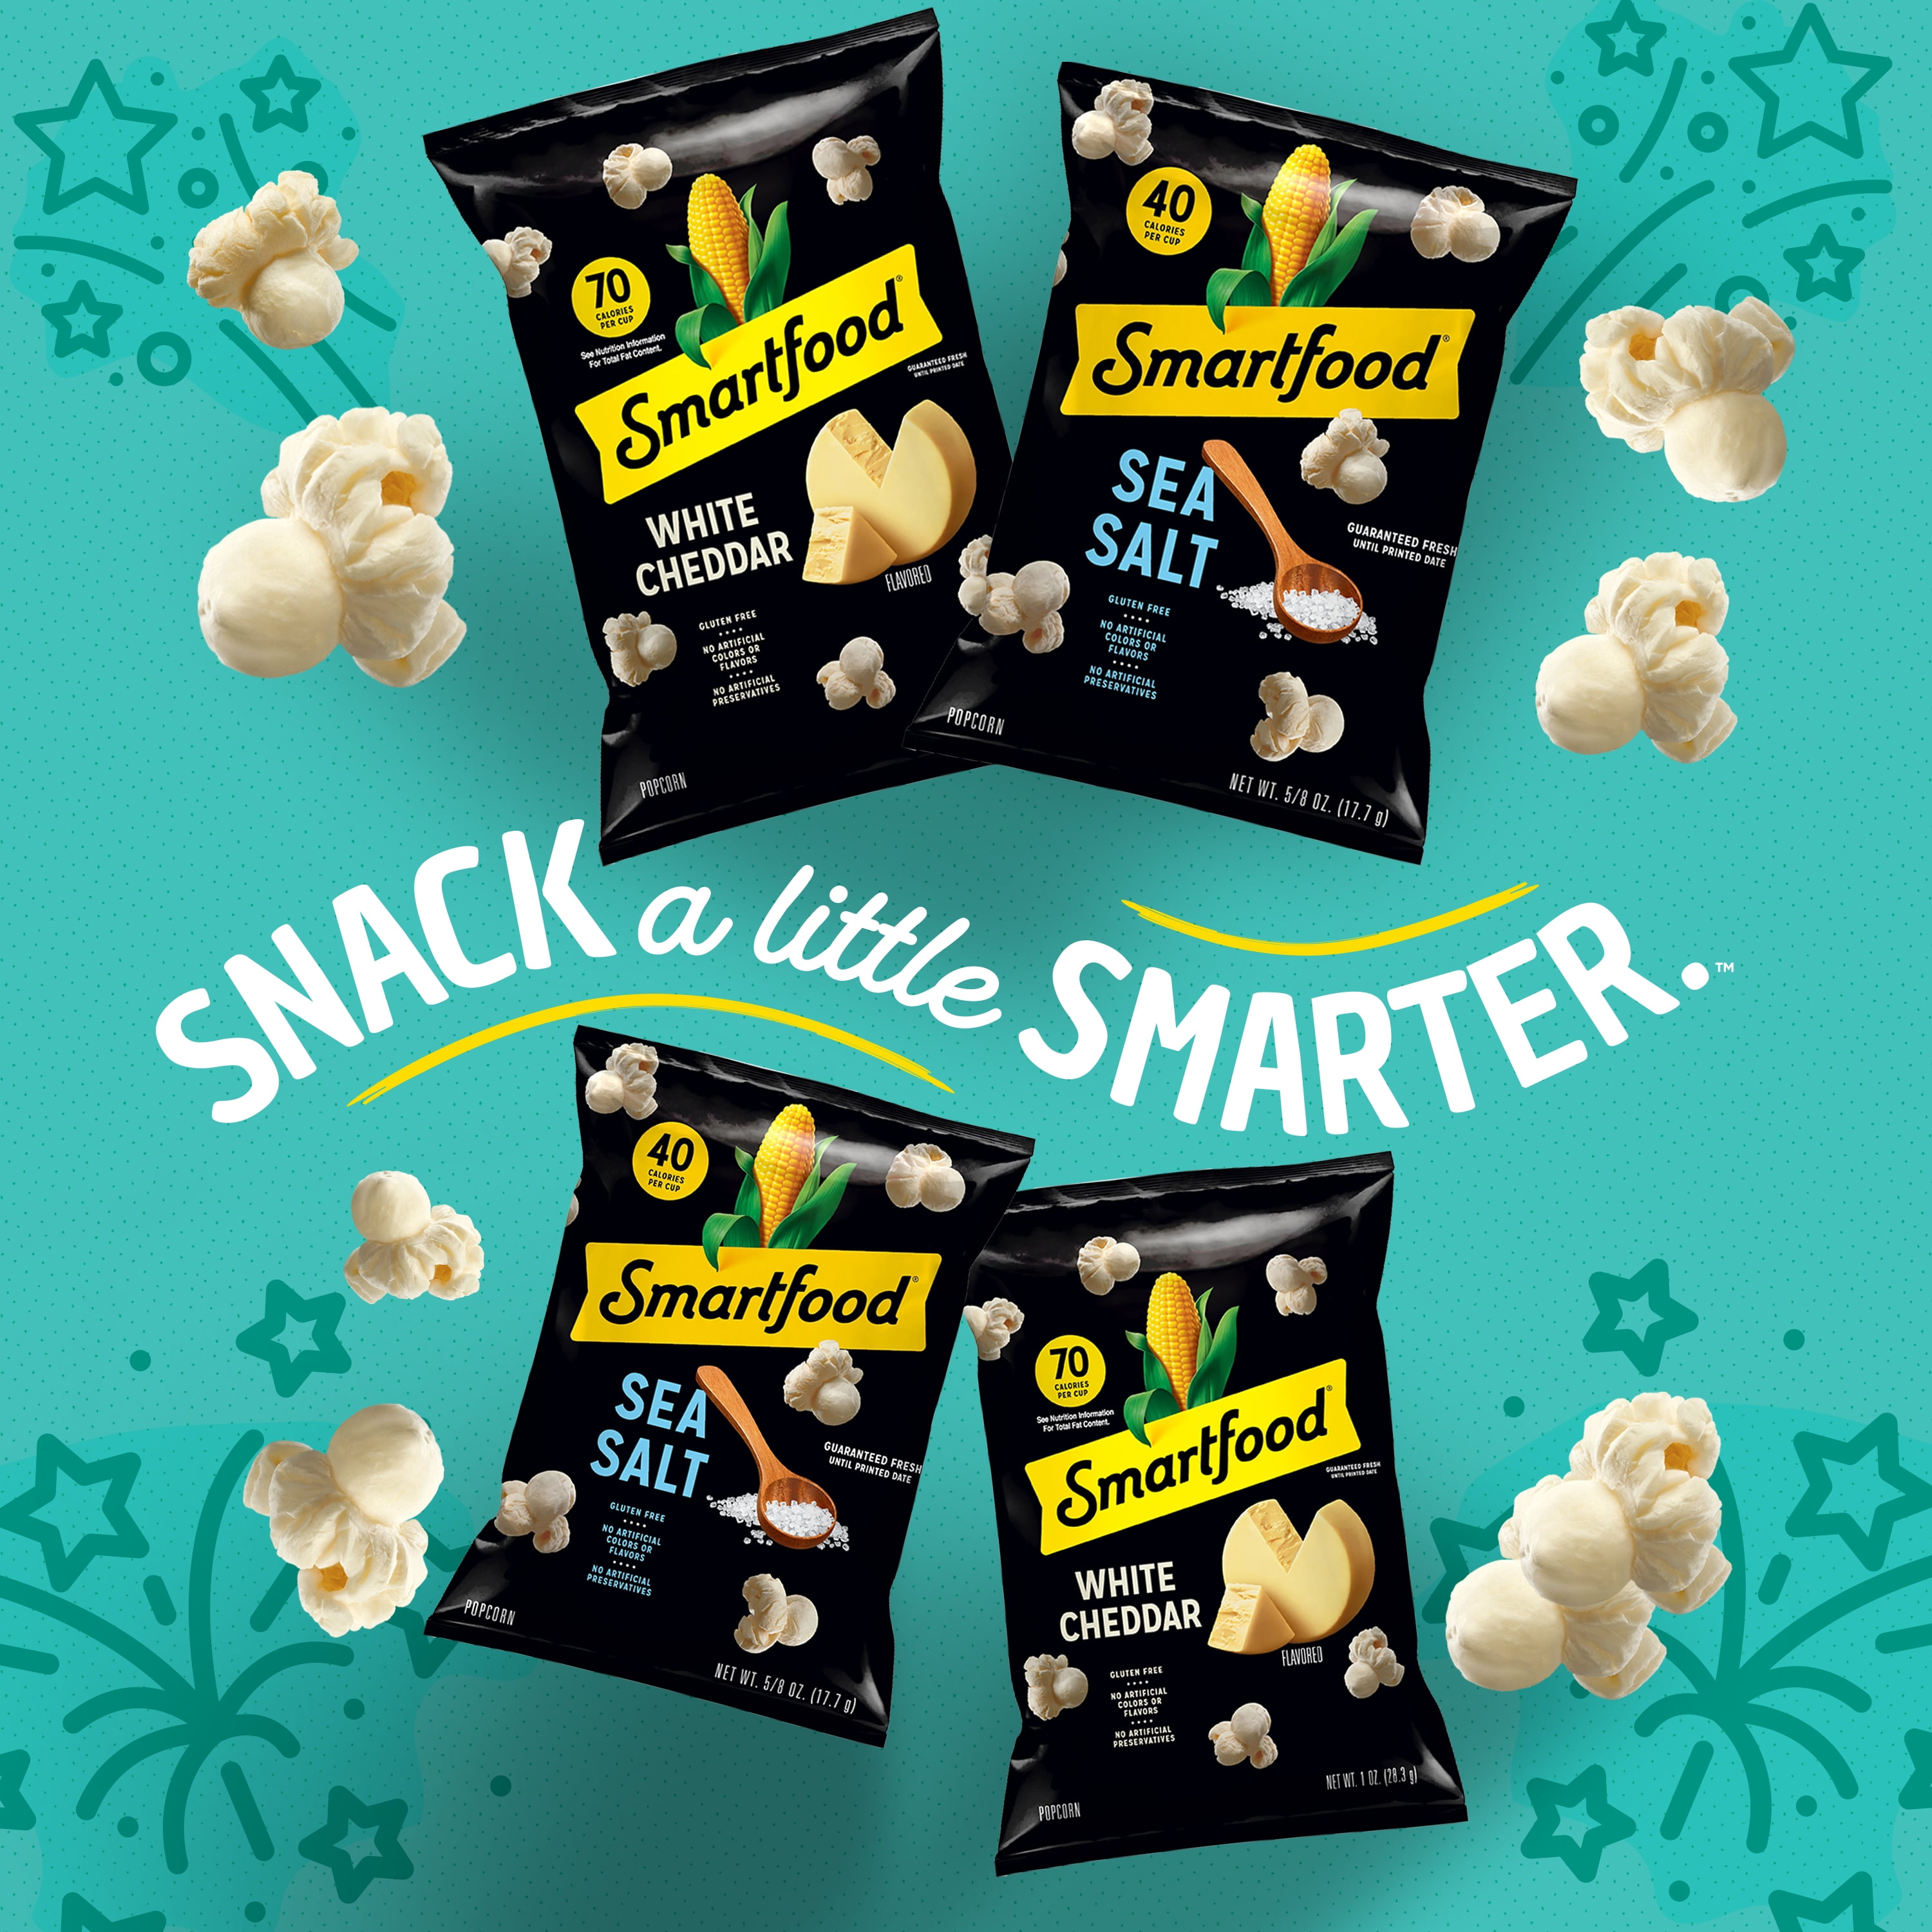 Buy Smartfood White Cheddar Popcorn, 6.75 oz Bag Online at Lowest 